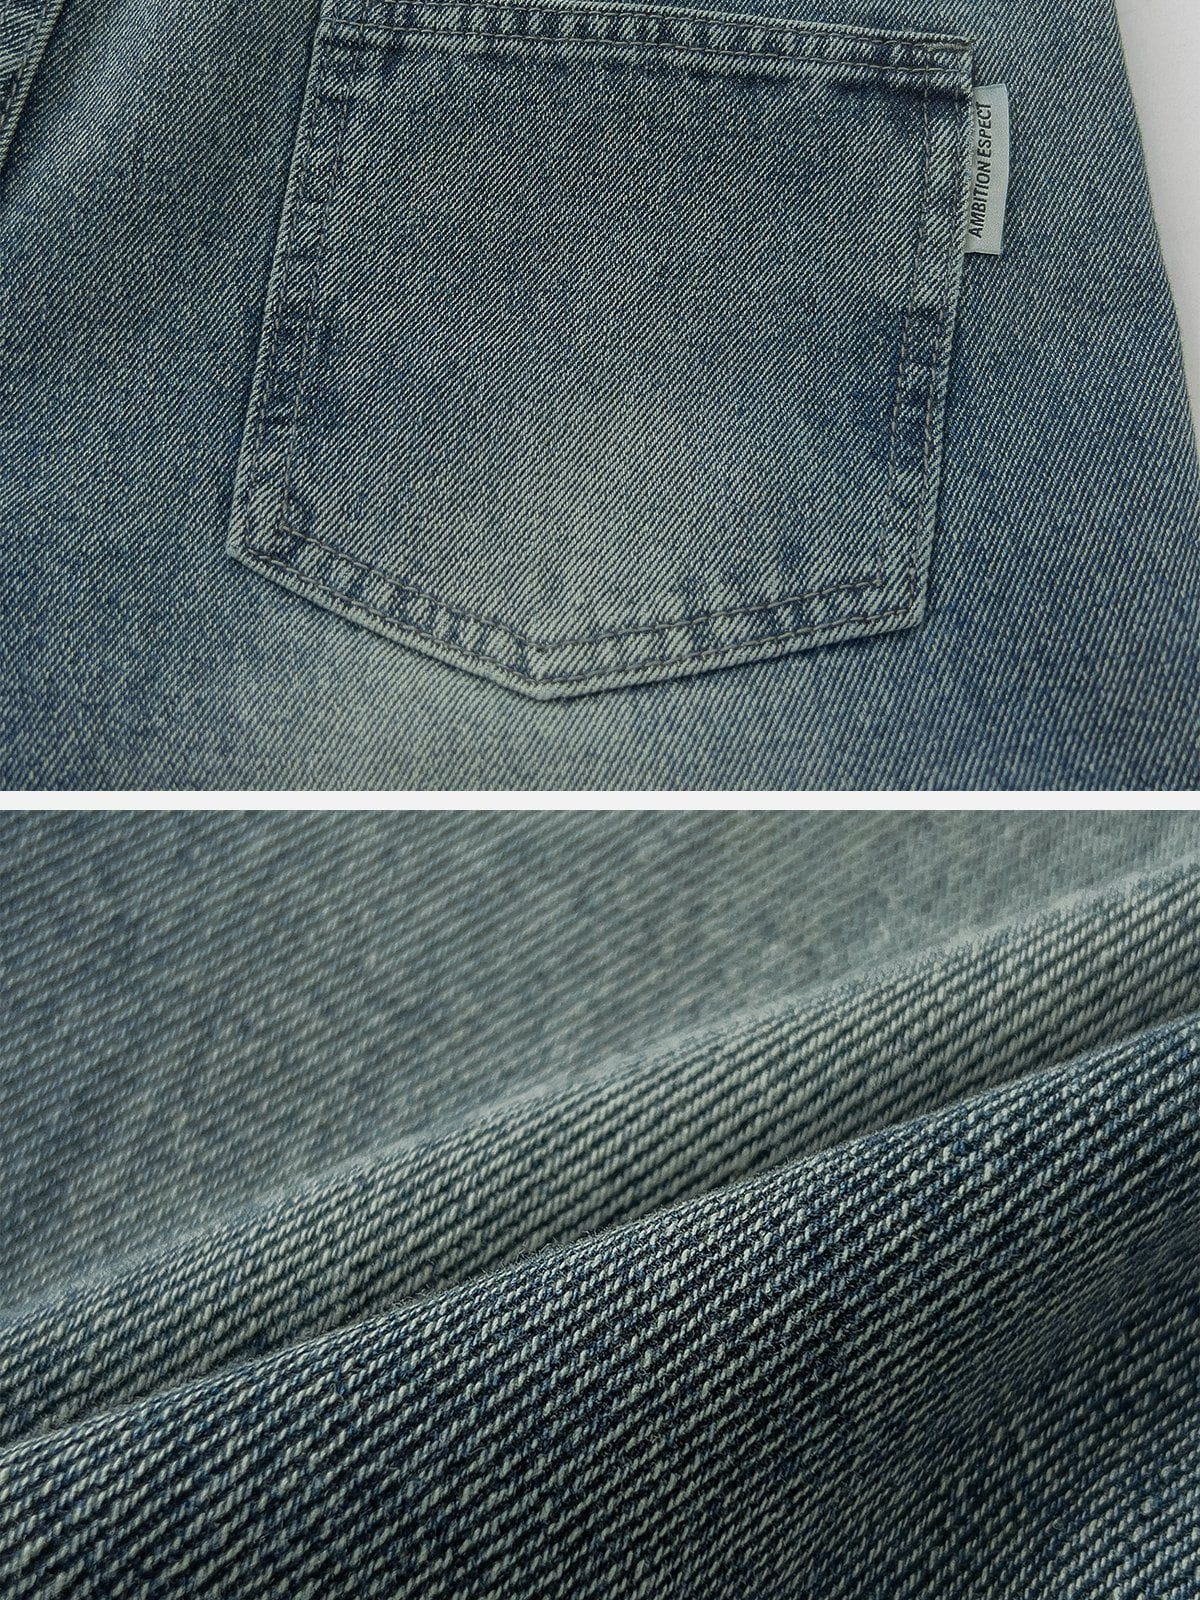 Eprezzy® - Foot Mouth Star Jeans [⭐] Streetwear Fashion - eprezzy.com